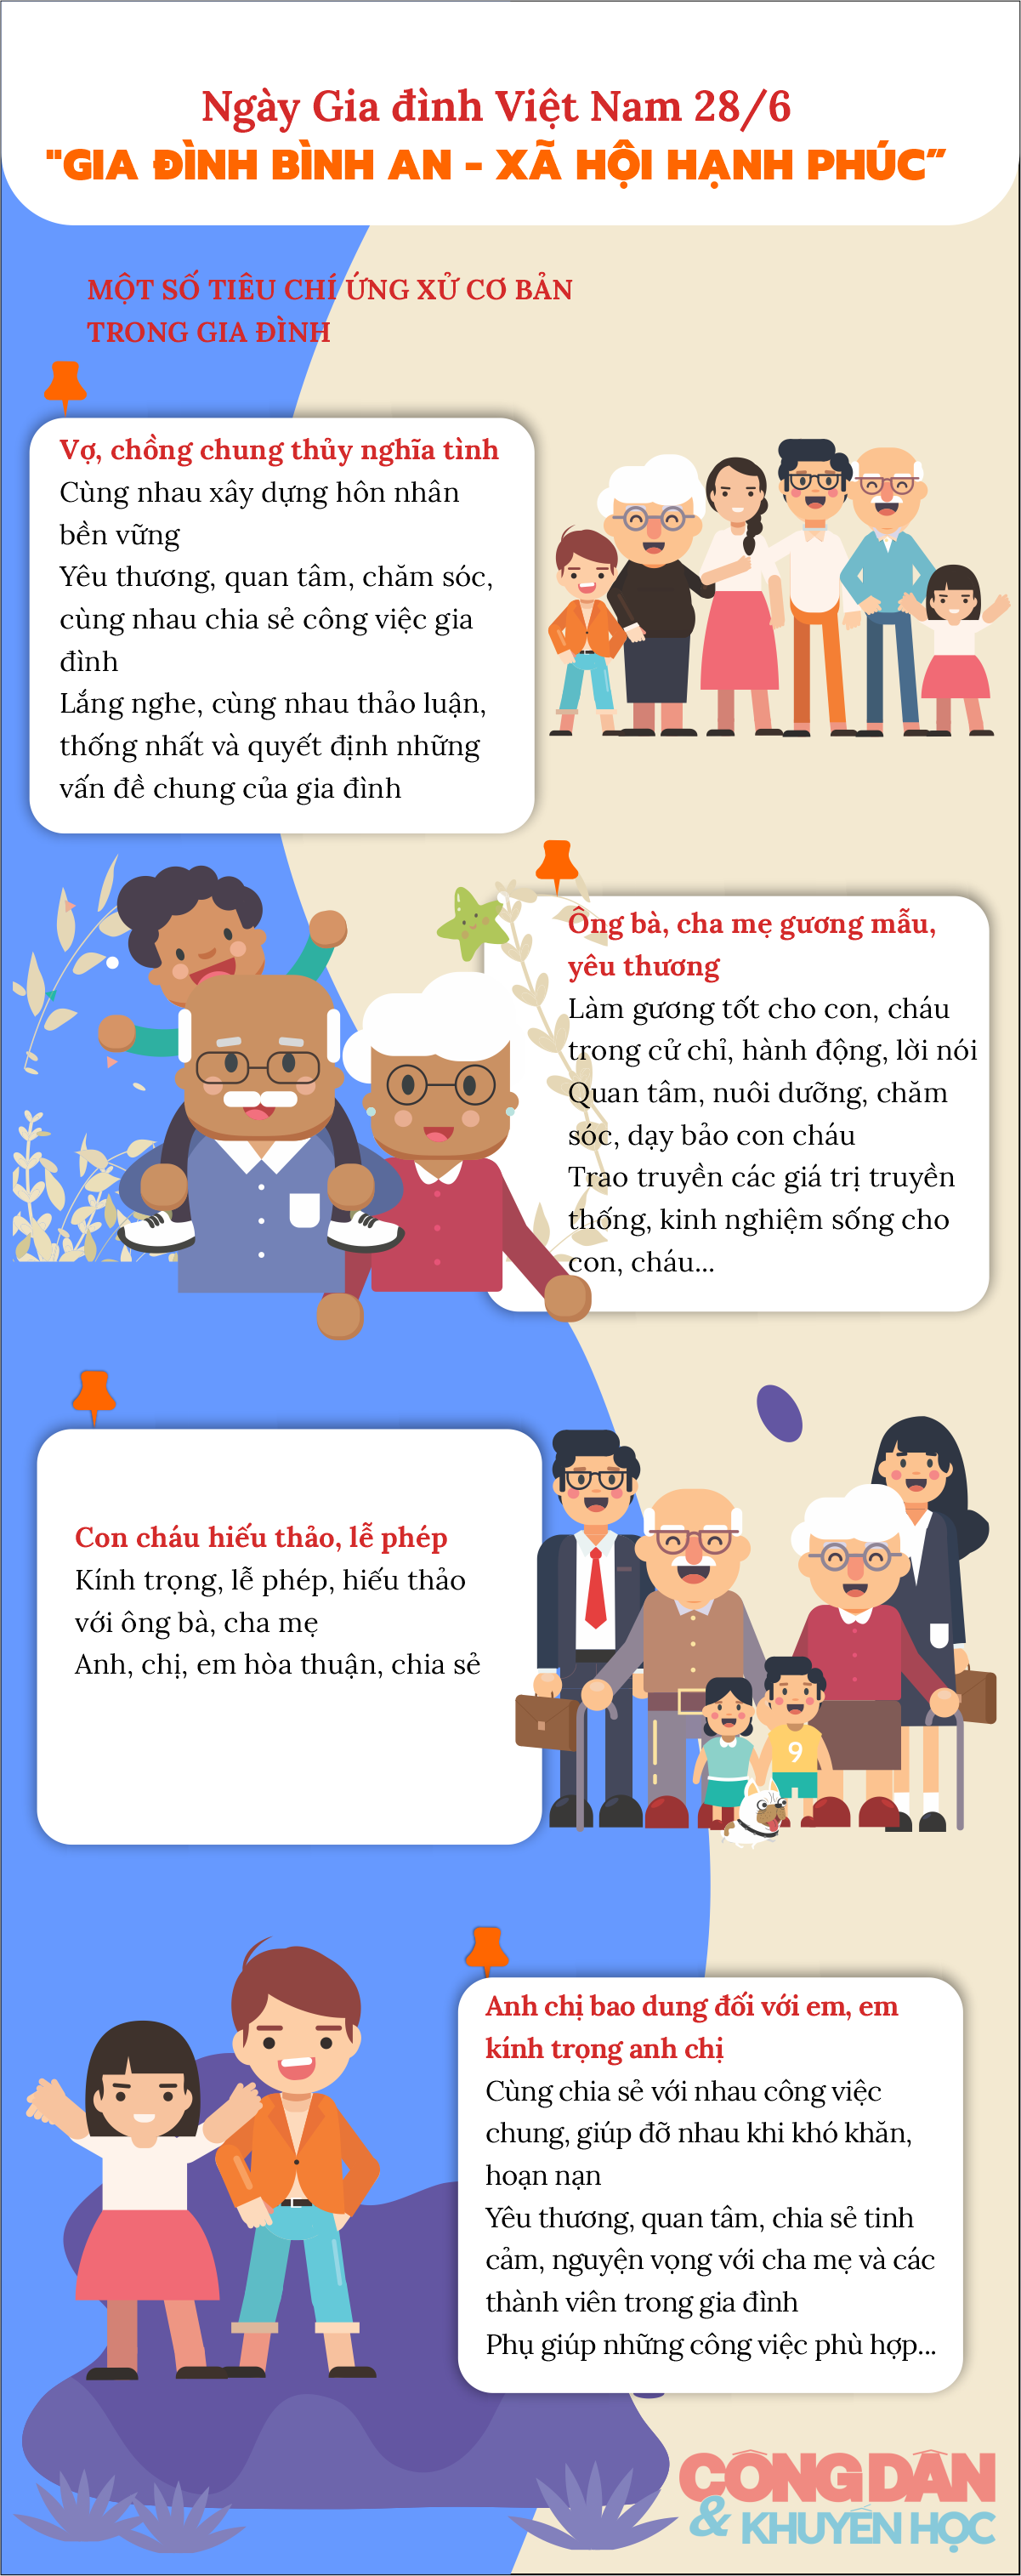 [Infographic] Ngày Gia đình Việt Nam 28/6: “Gia đình bình an - xã hội hạnh phúc” - Ảnh 1.